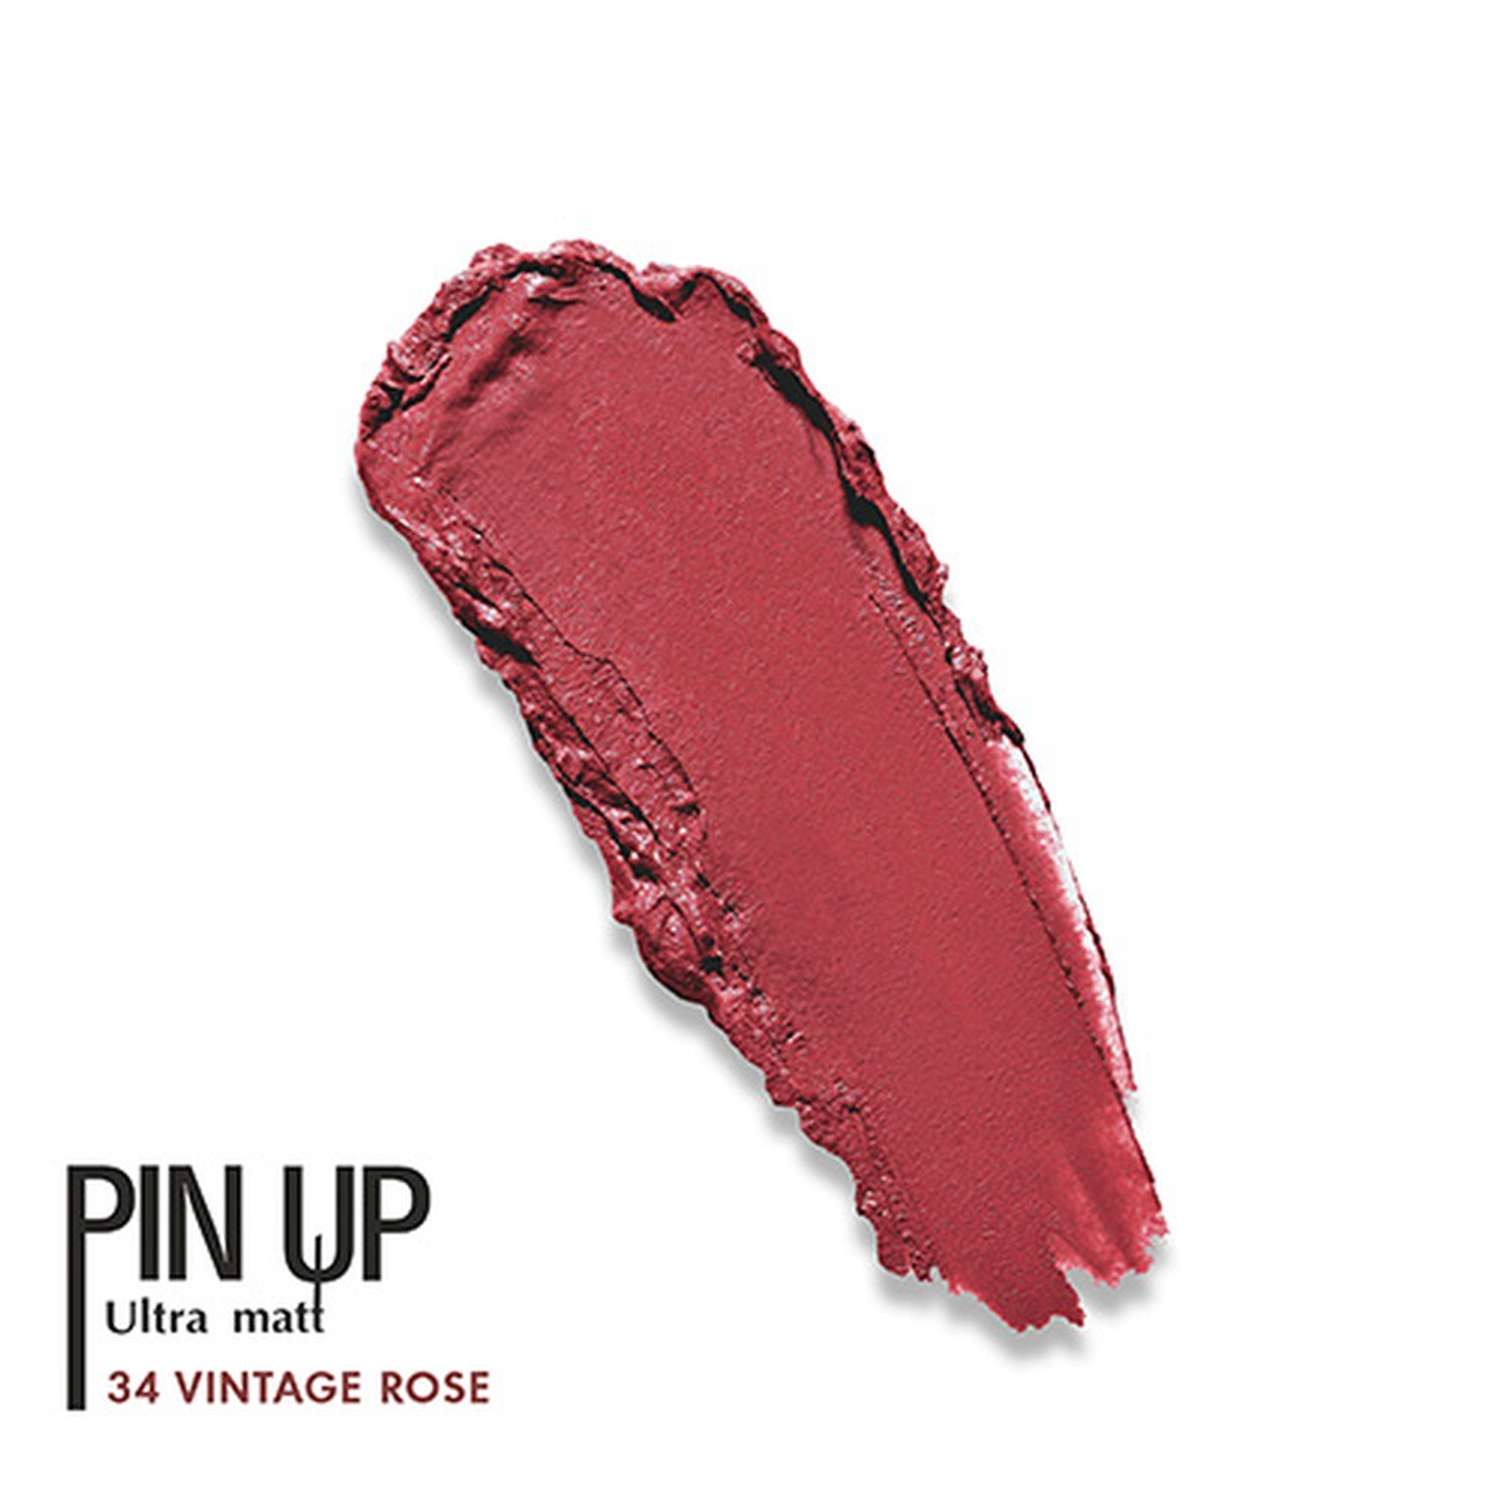 Блеск для губ Luxvisage Ultra matt матовый тон 34 vintage rose - фото 5